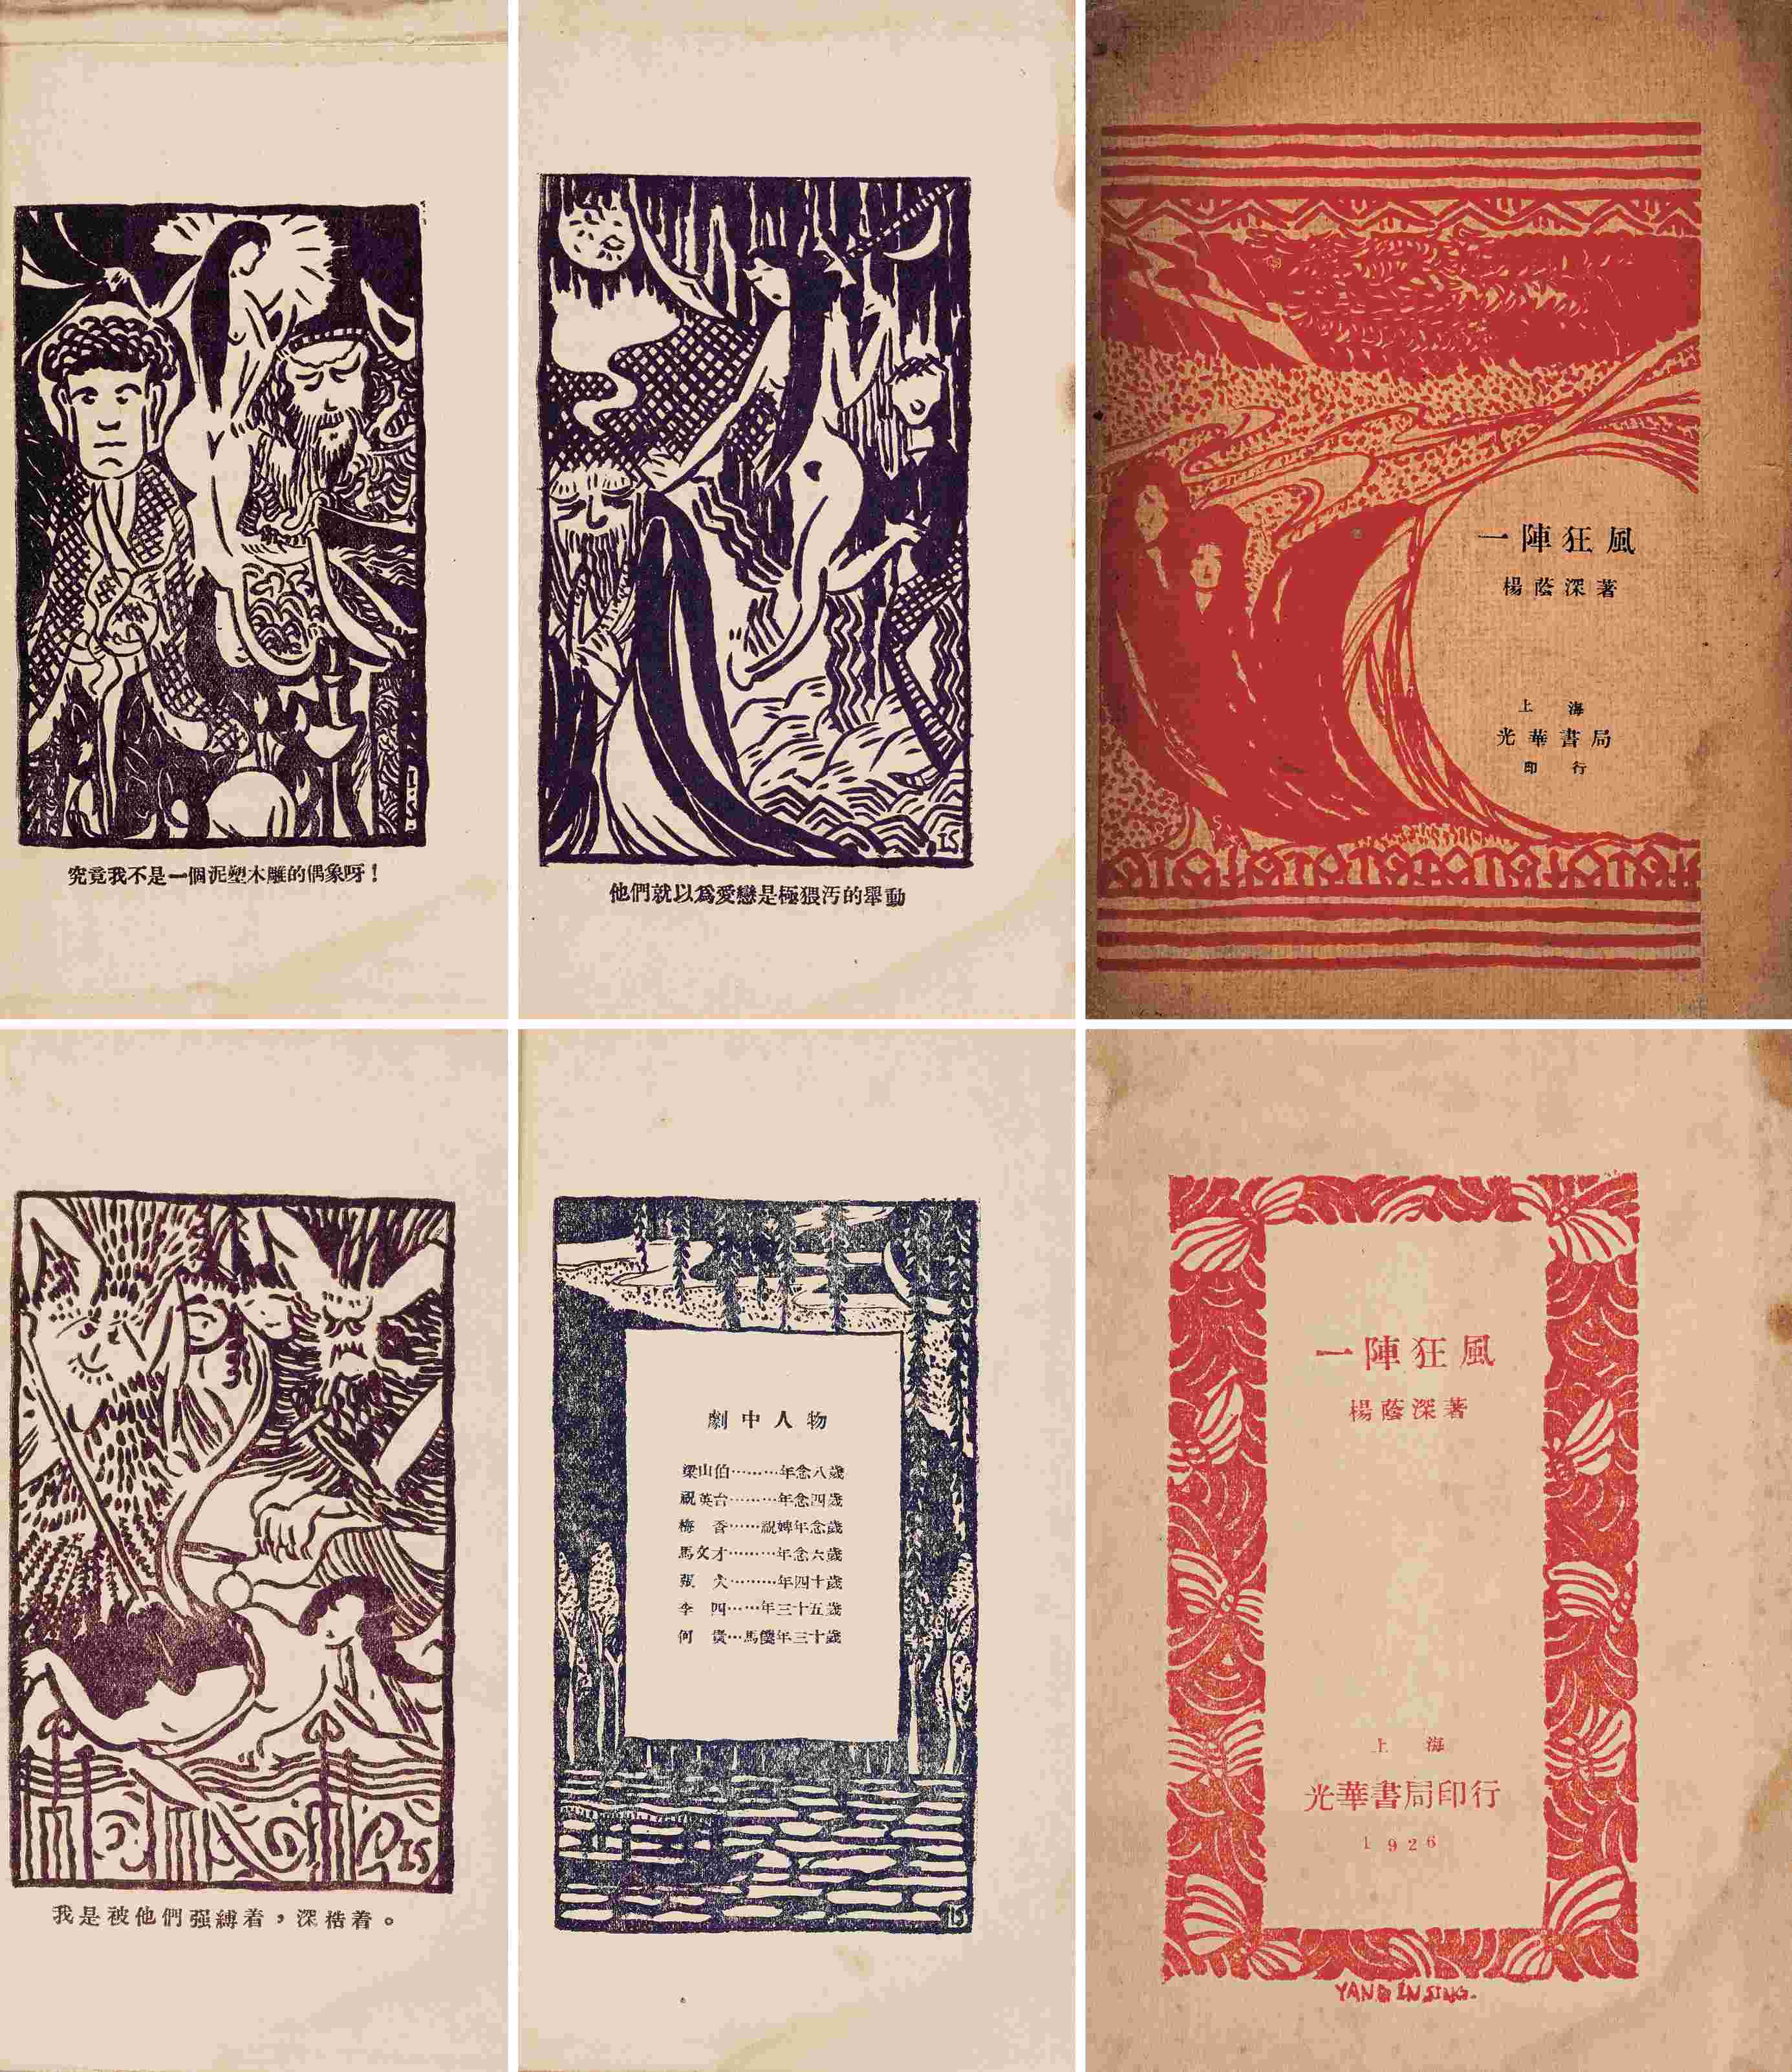 一阵狂风 民国二十七年（1928）上海光华书局再版